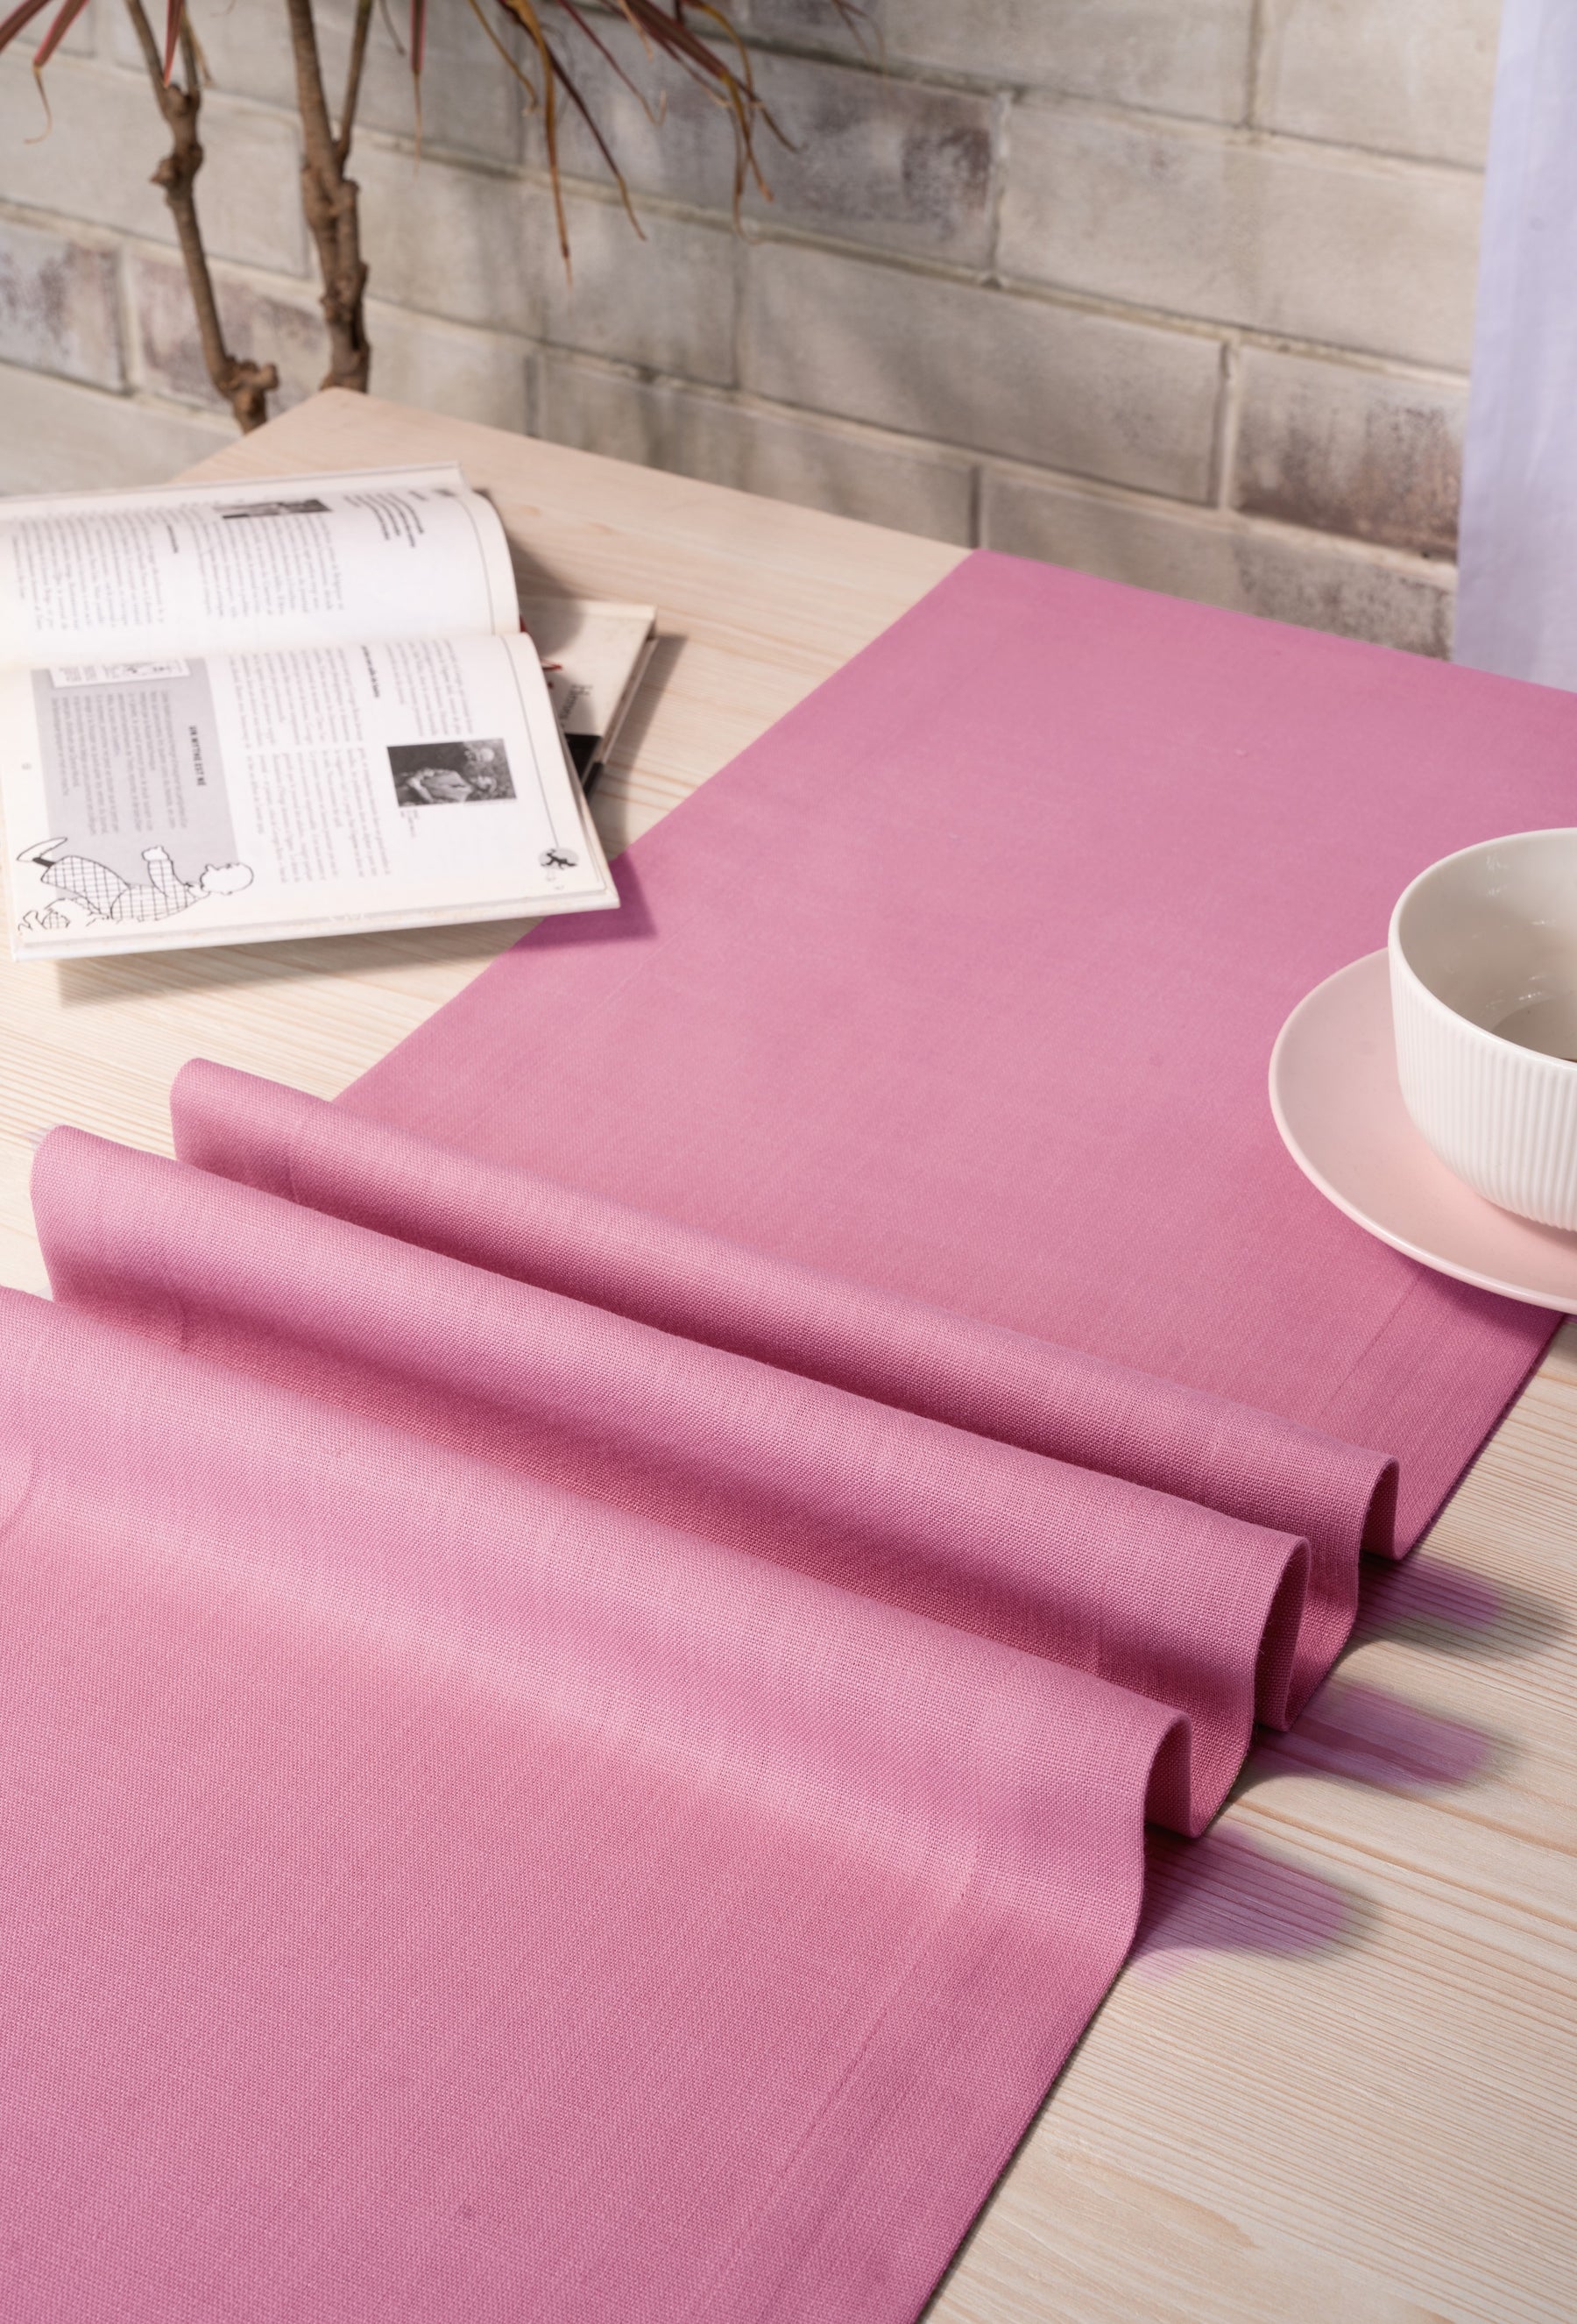 Bubblegum Pink Linen Textured Table Runner - Mitered Corner